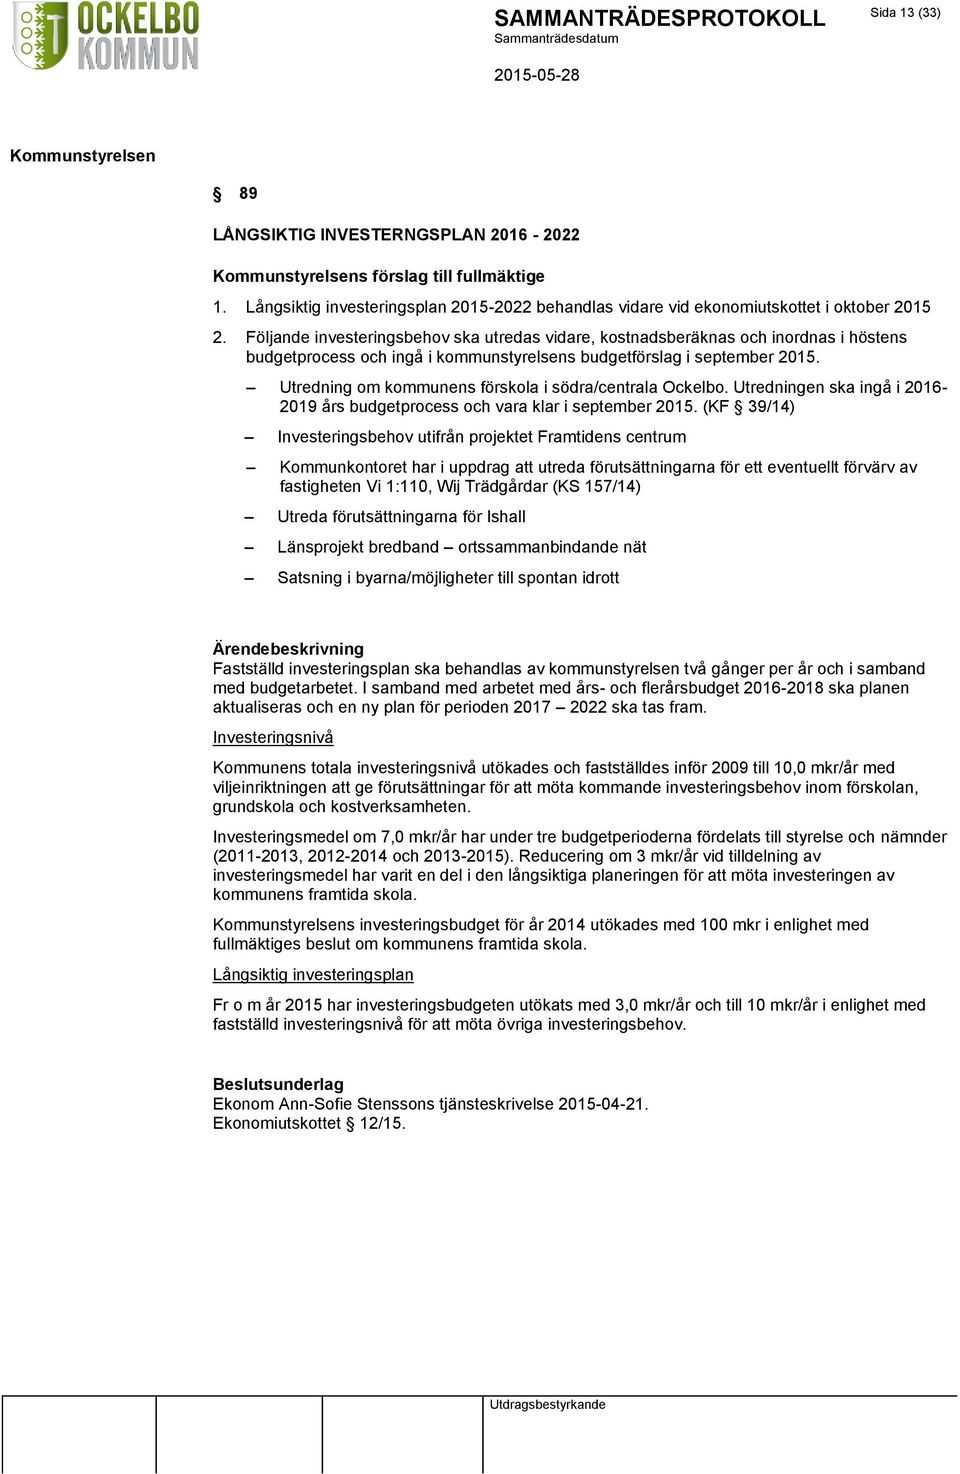 Utredning om kommunens förskola i södra/centrala Ockelbo. Utredningen ska ingå i 2016-2019 års budgetprocess och vara klar i september 2015.